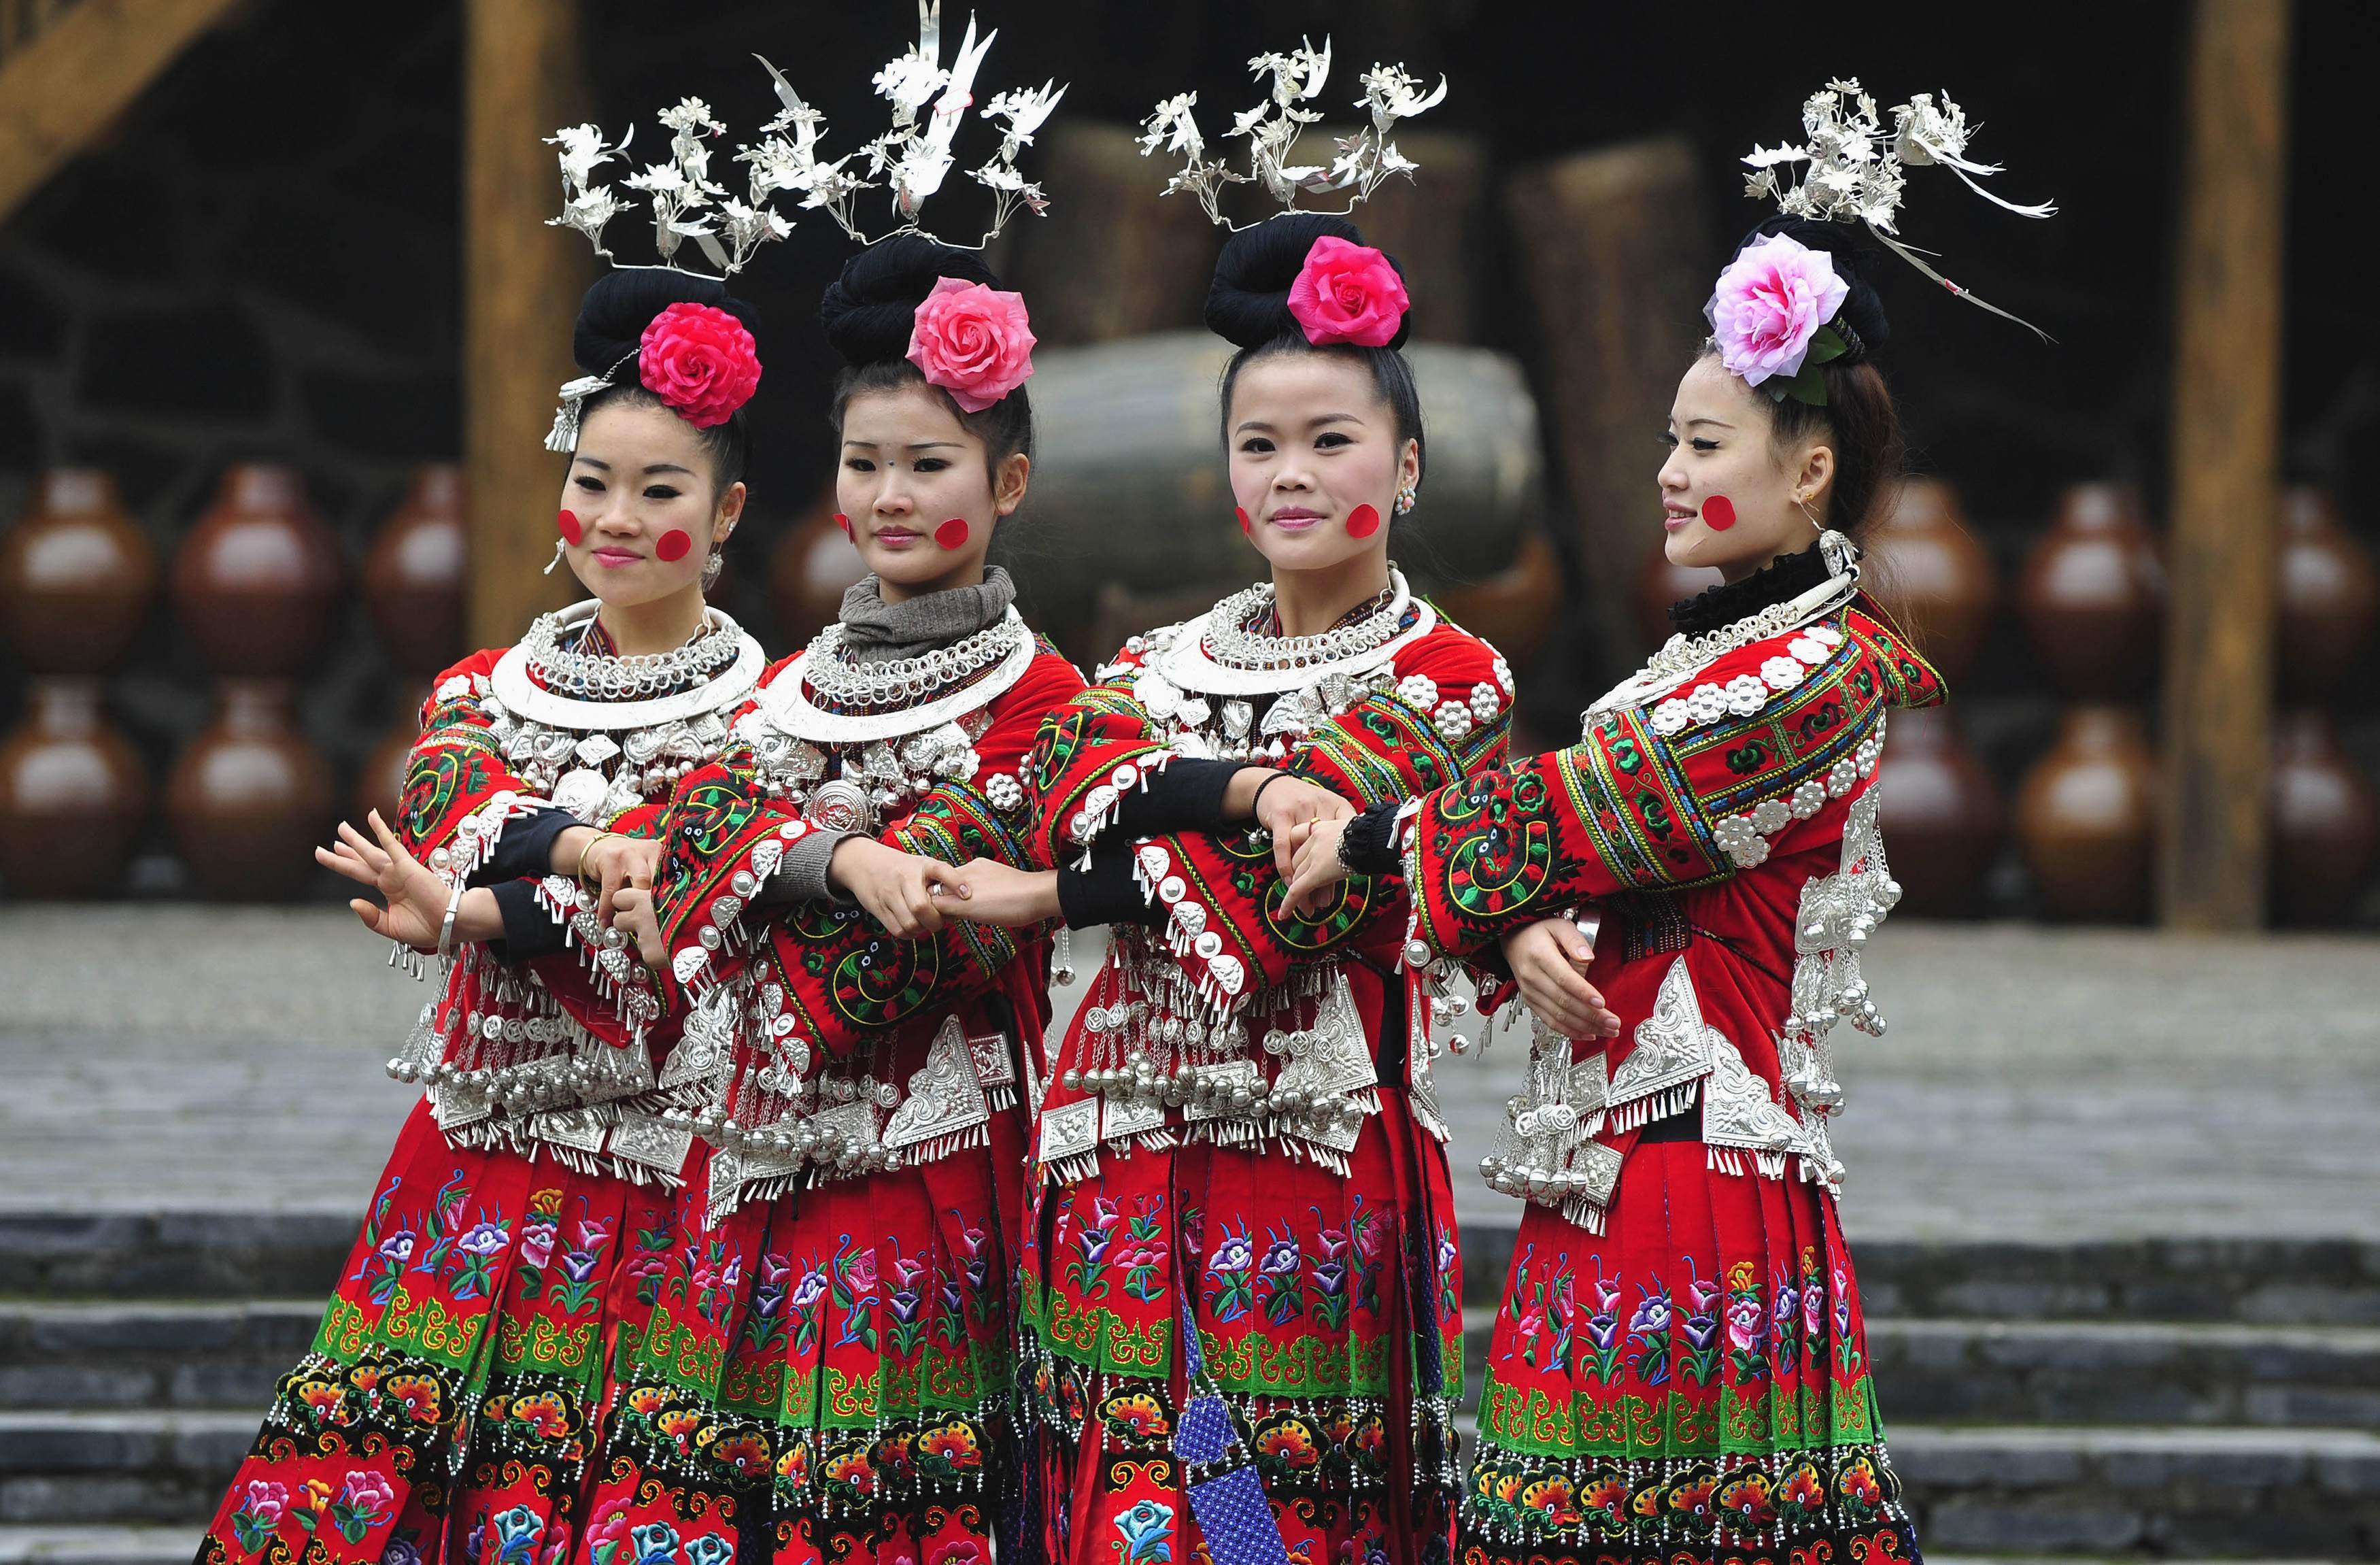 Народы населяющие китай и их основные занятия. Группа Мяо Китай. Национальный костюм народа Мяо Китай. Ханьцы народ Китая. Народность Мяо в Китае.